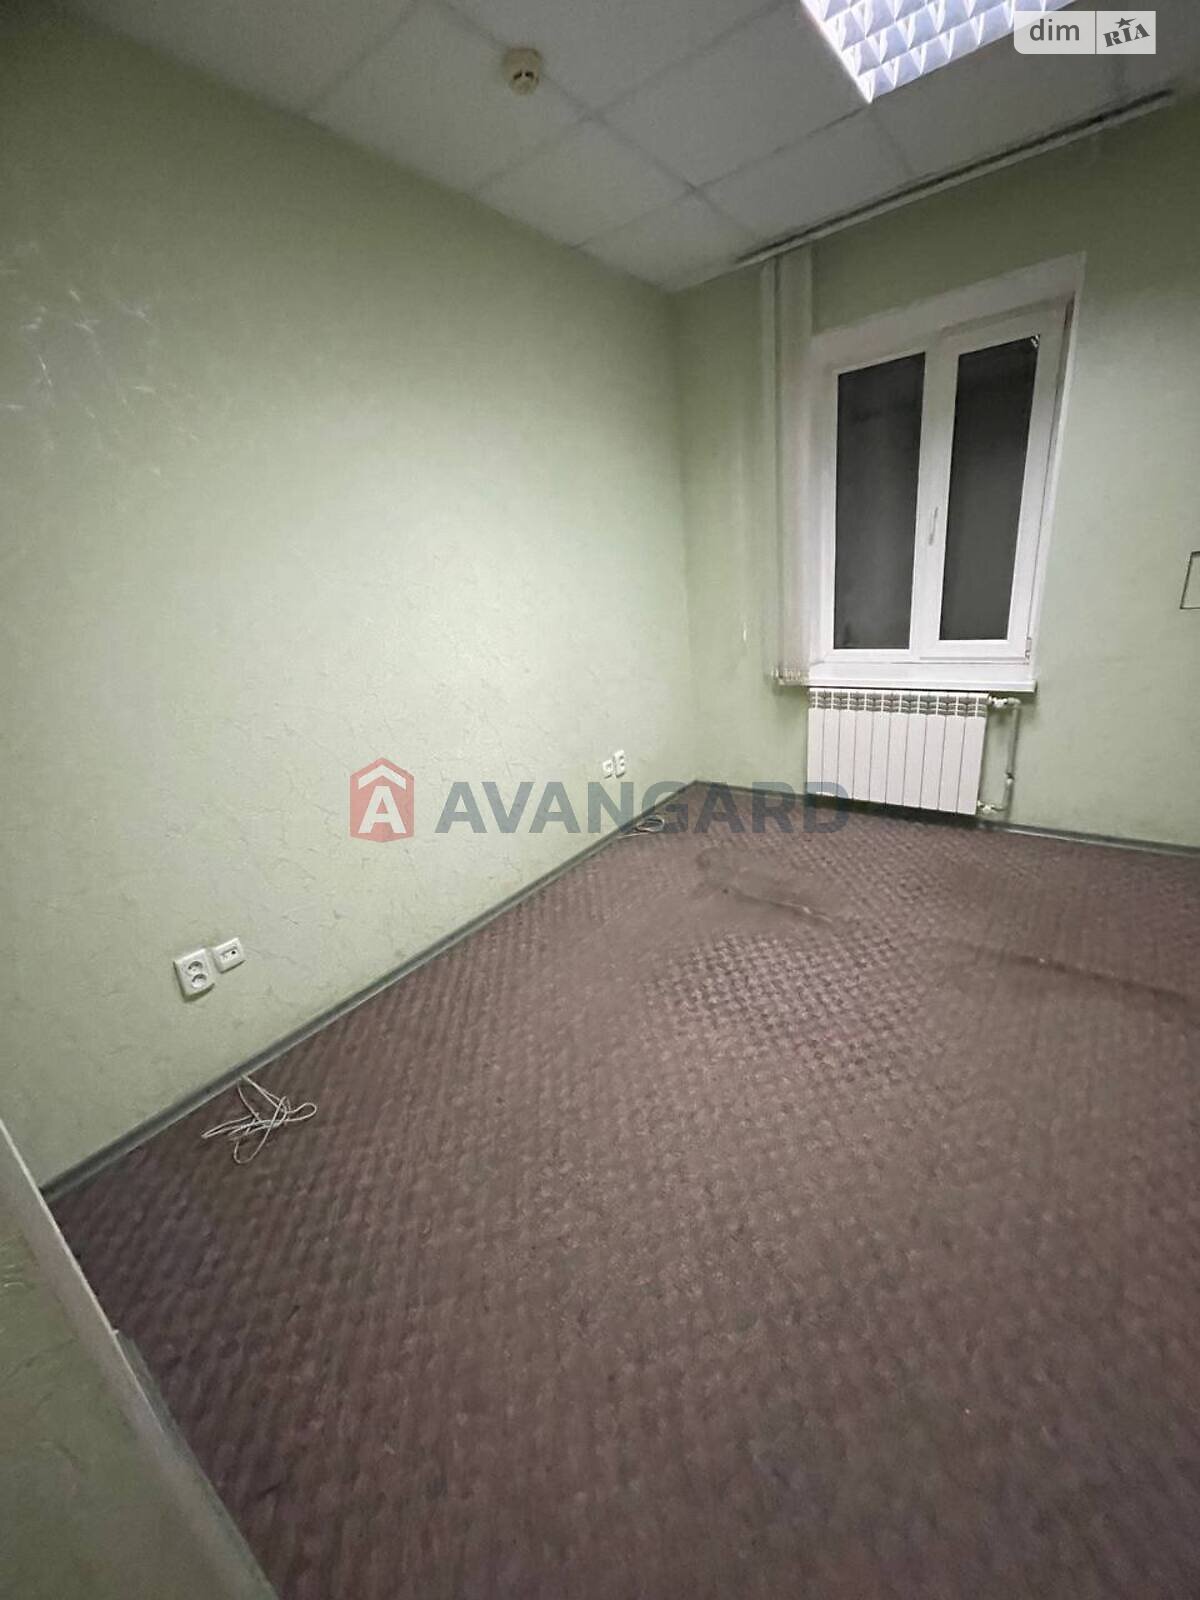 Аренда офисного помещения в Каменском, Менделеєва, помещений - 5, этаж - 1 фото 1